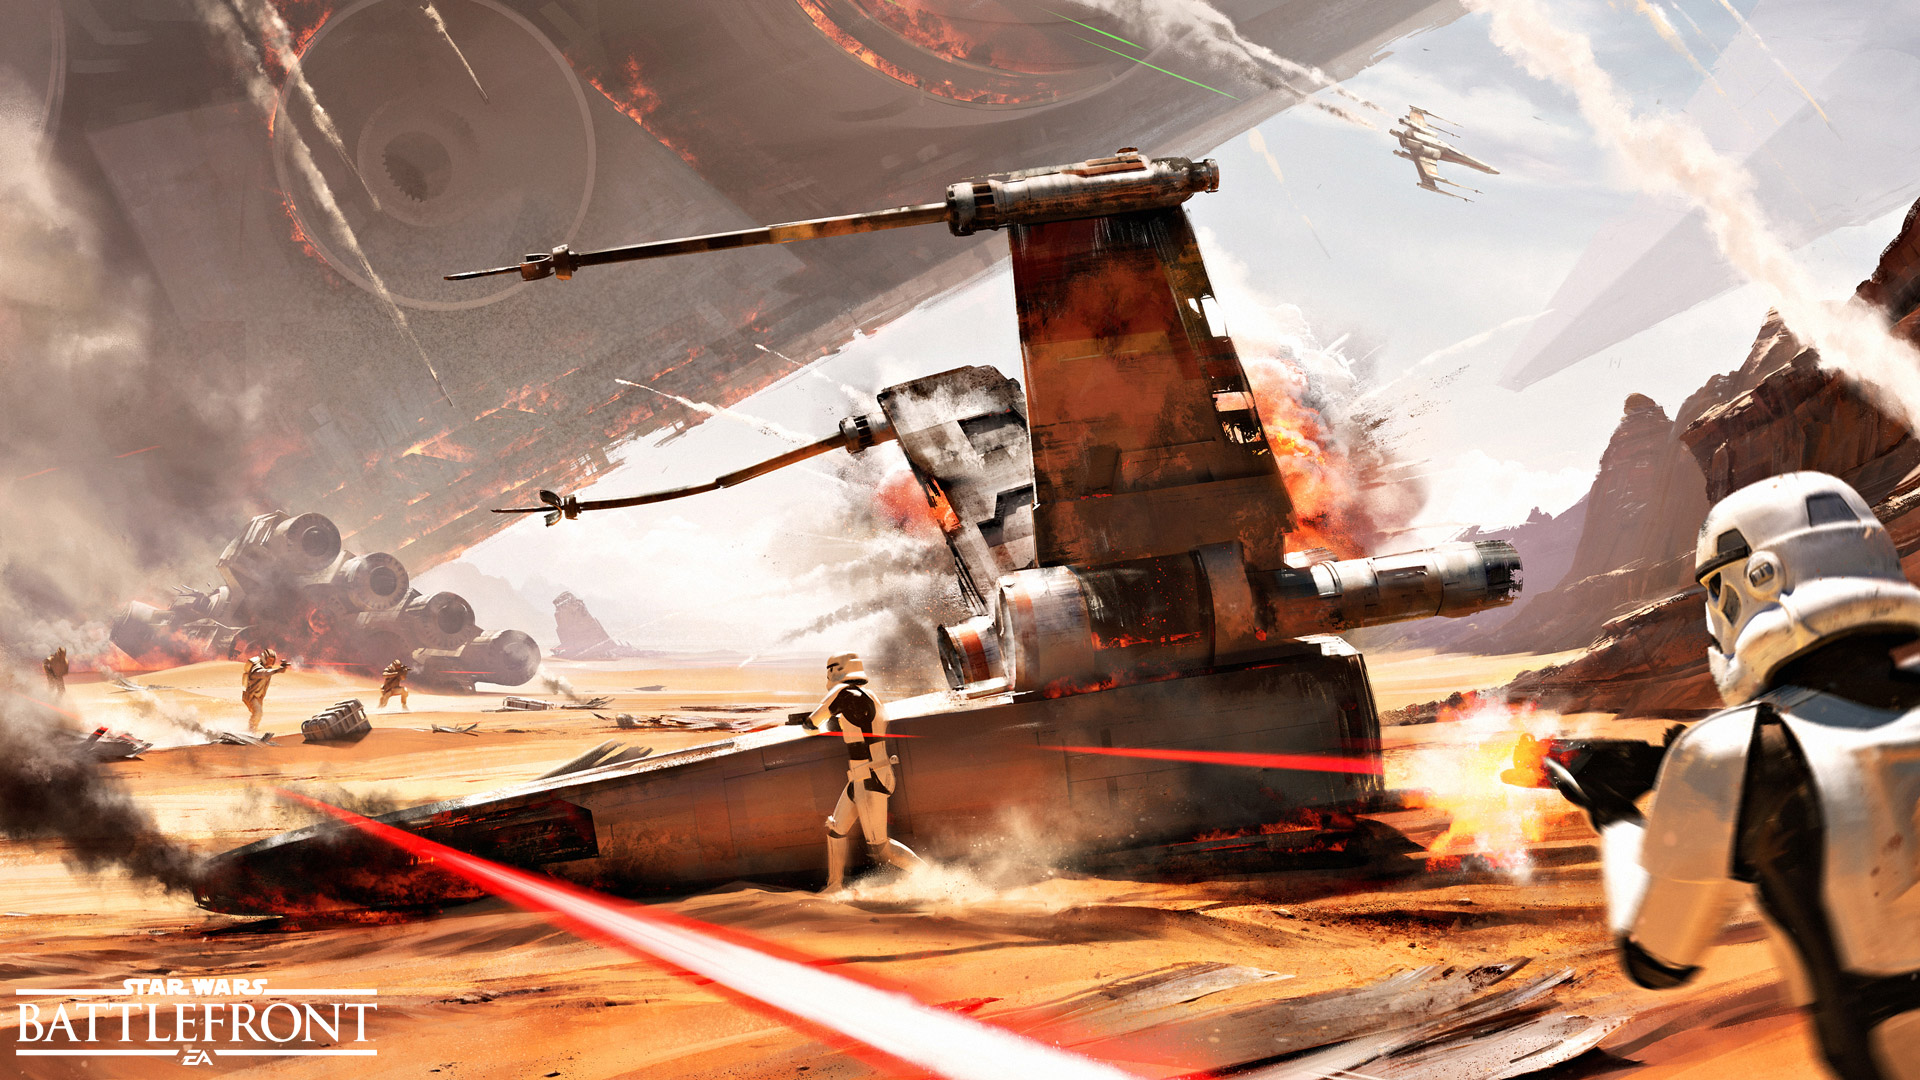 Star Wars: Battlefront - Battle of Jakku screenshot 5398